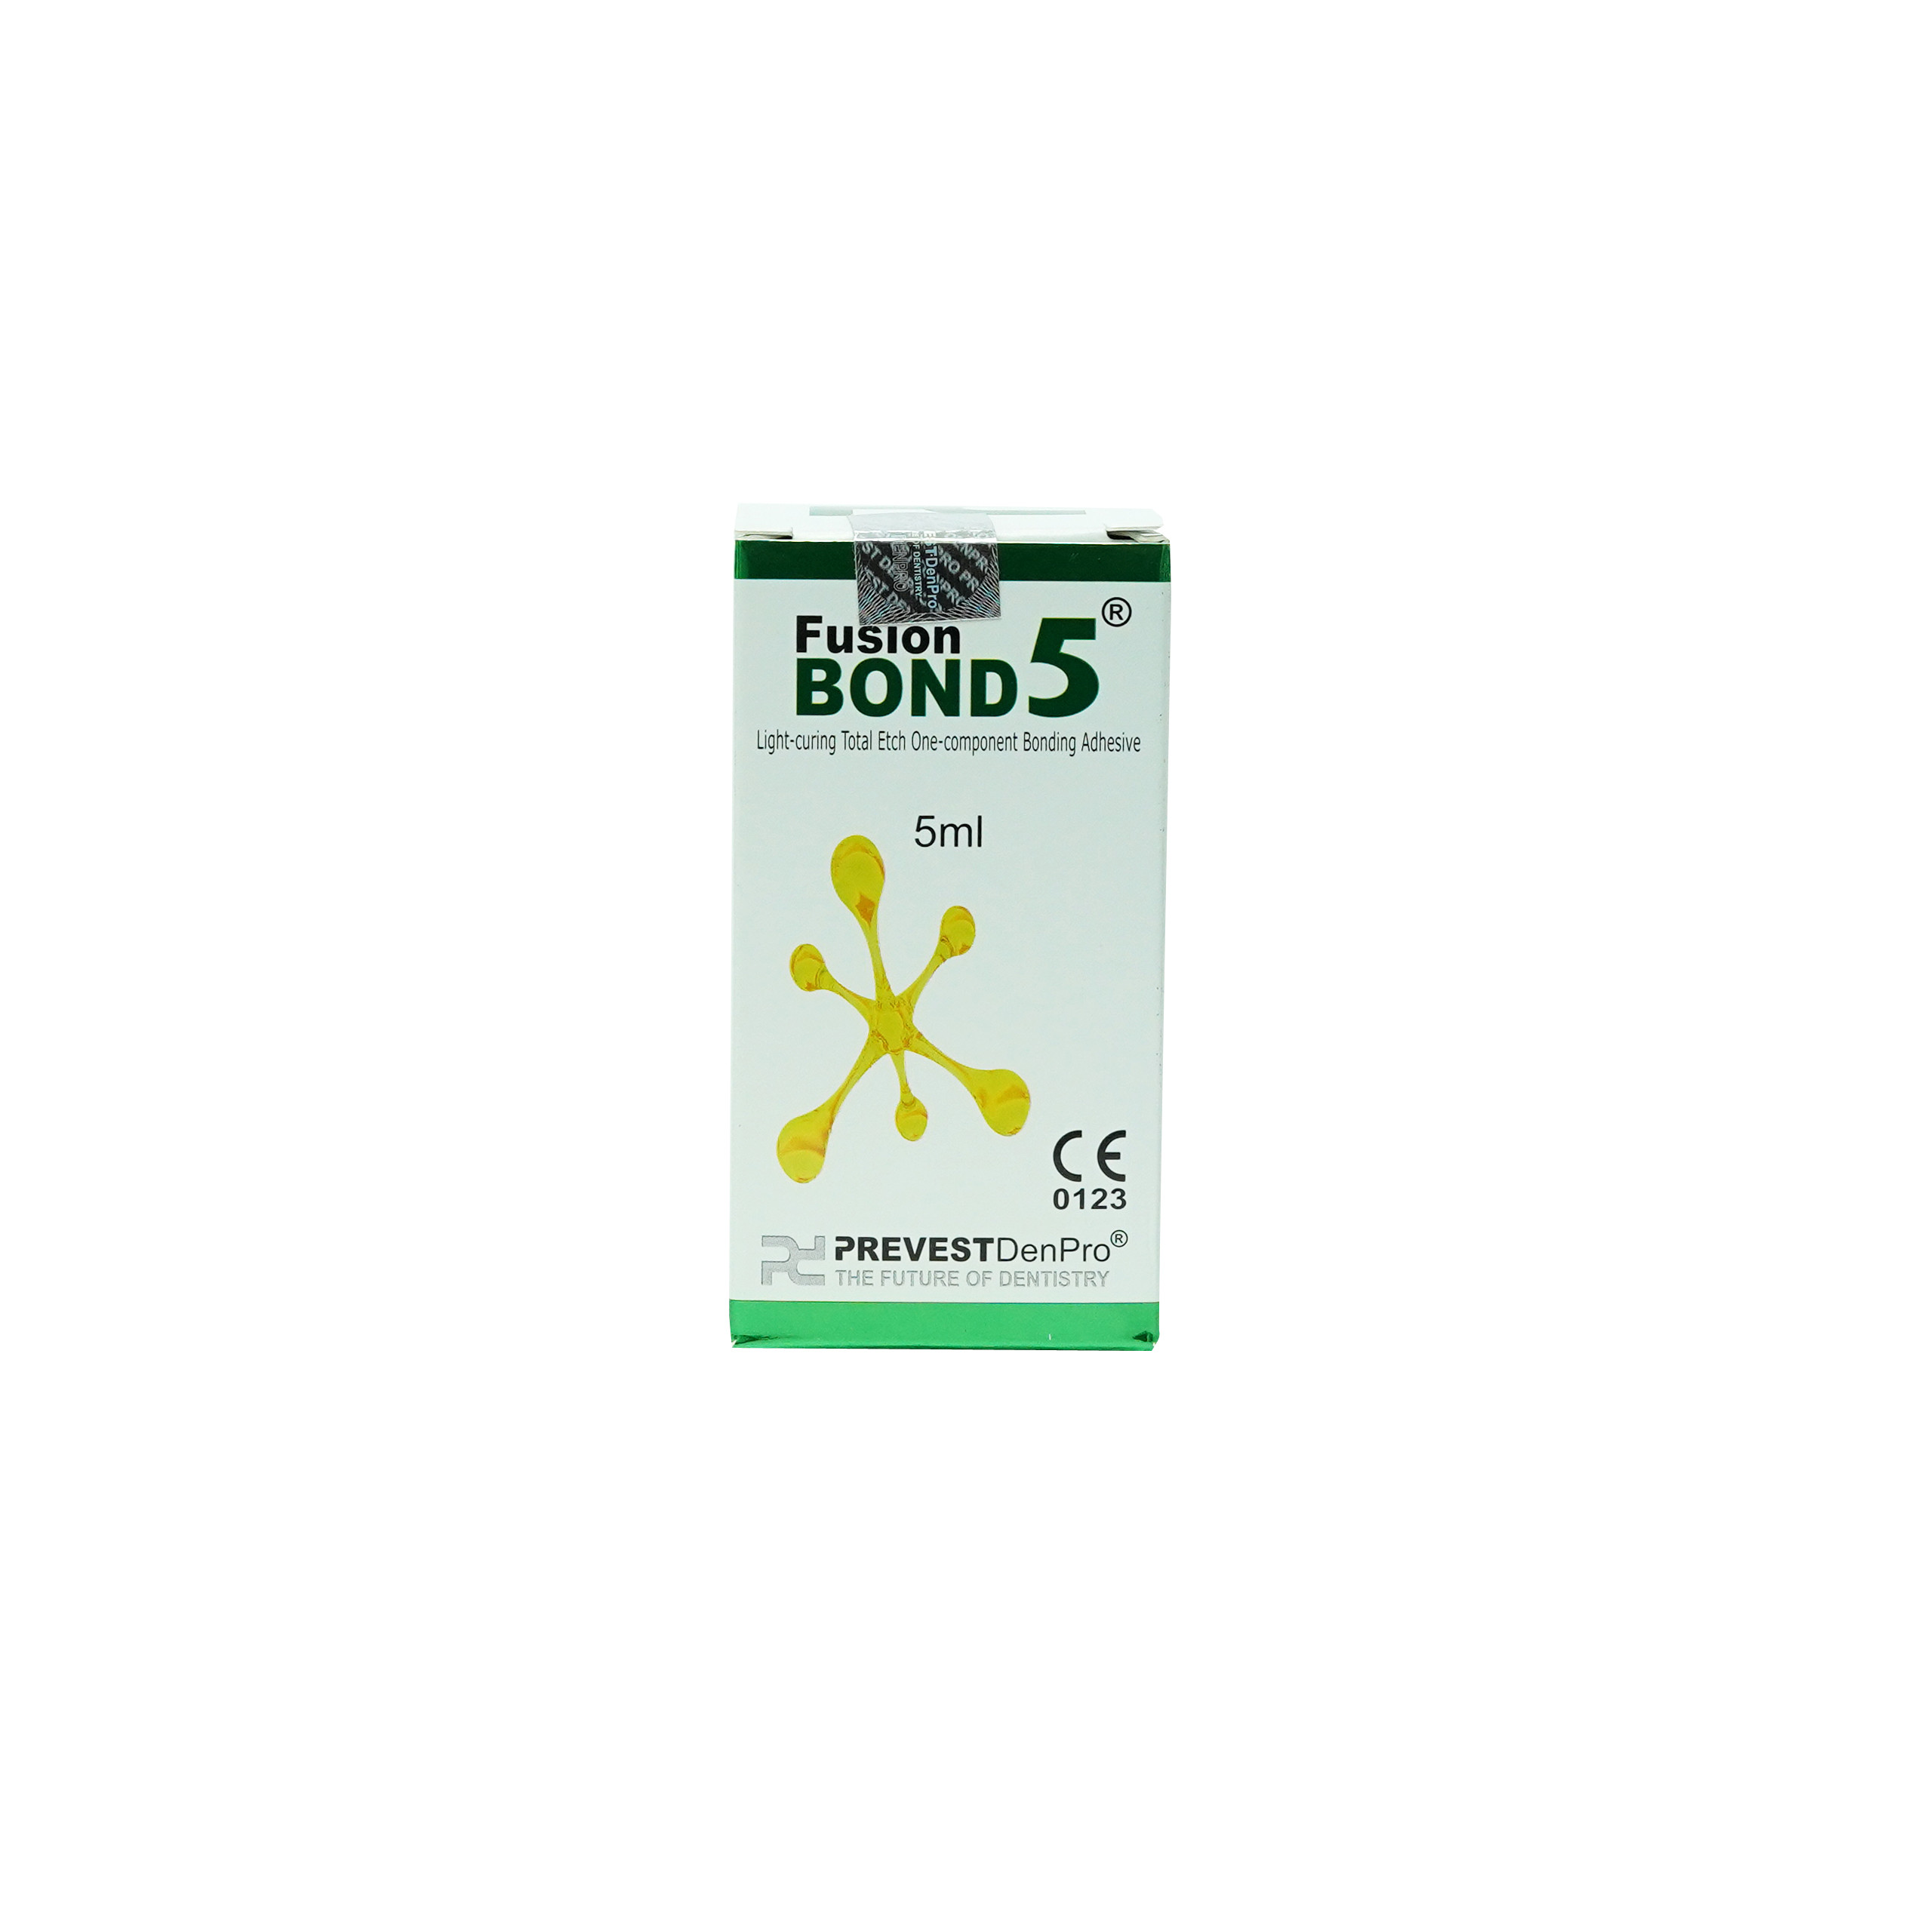 Prevest Denpro Fusion Bond 5 Total Etch Bond